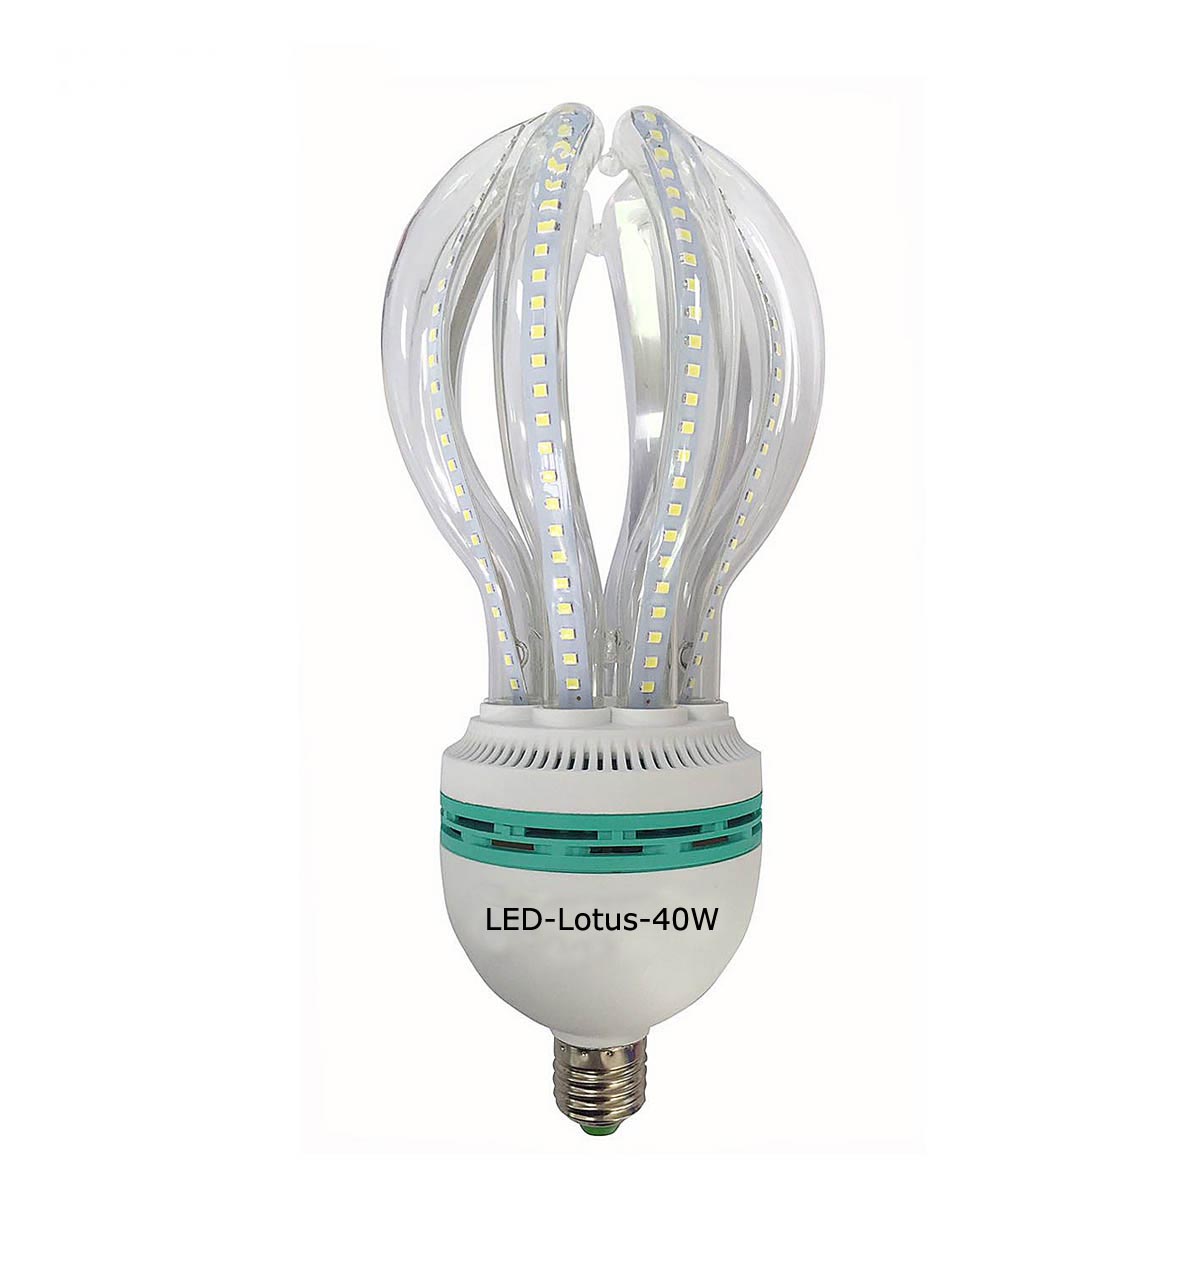 LED lotus lamp 40W 